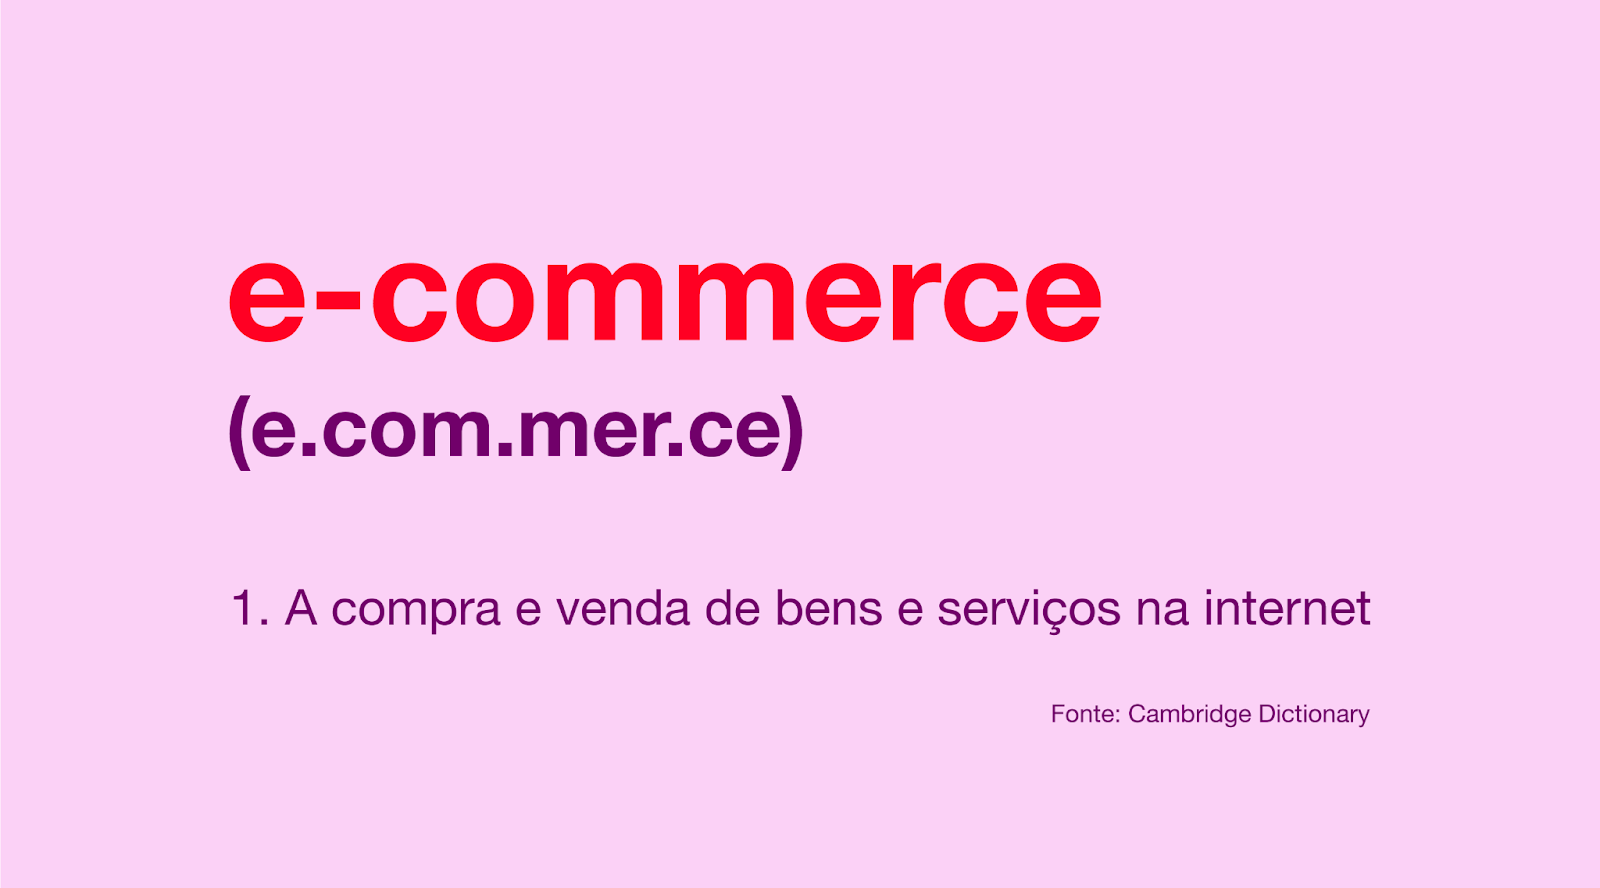 e-commerce - definição